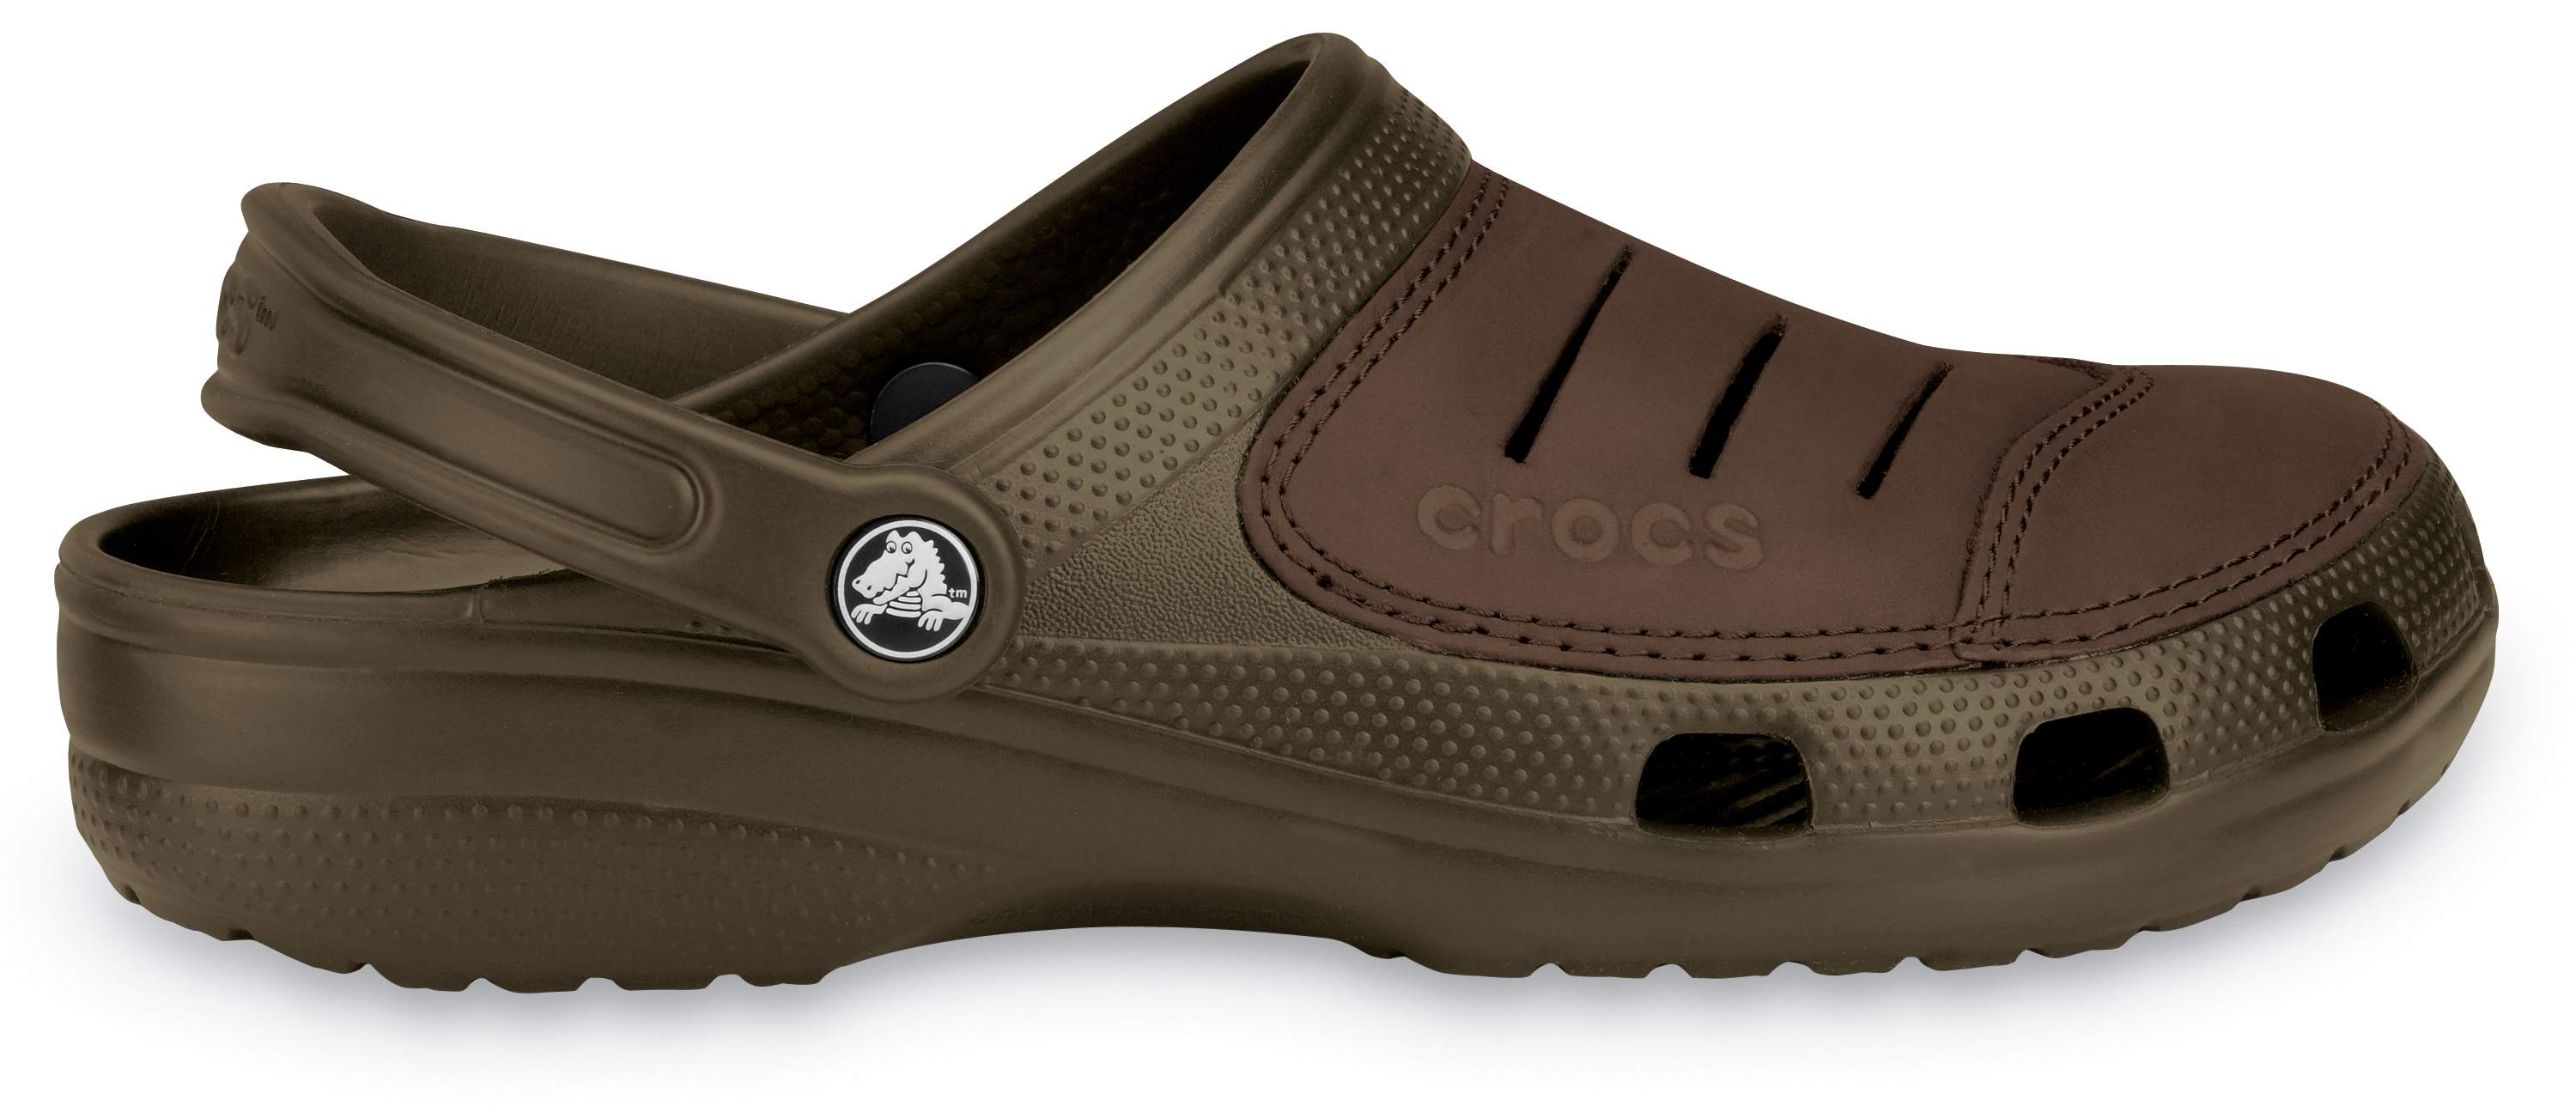 crocs men's bogota clog